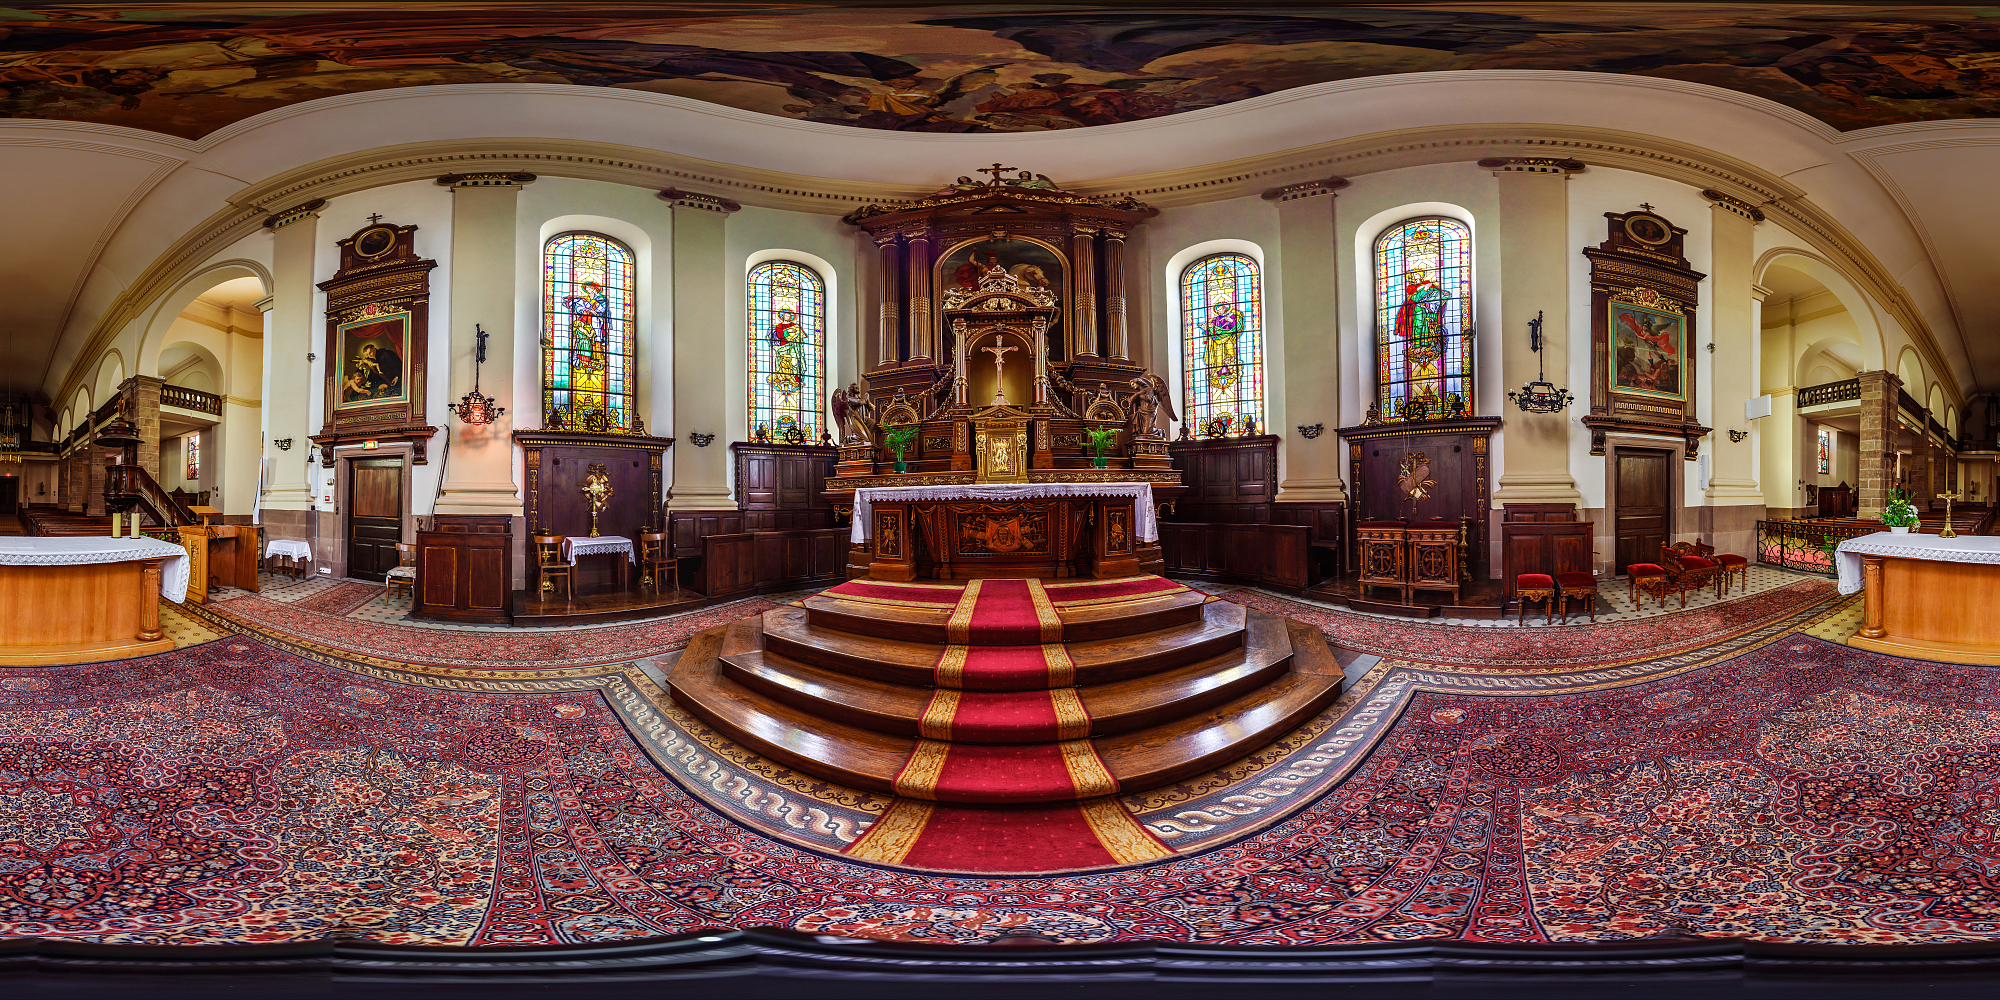 法国艾菲的圣乔治教堂内部。360度全景。图片下载